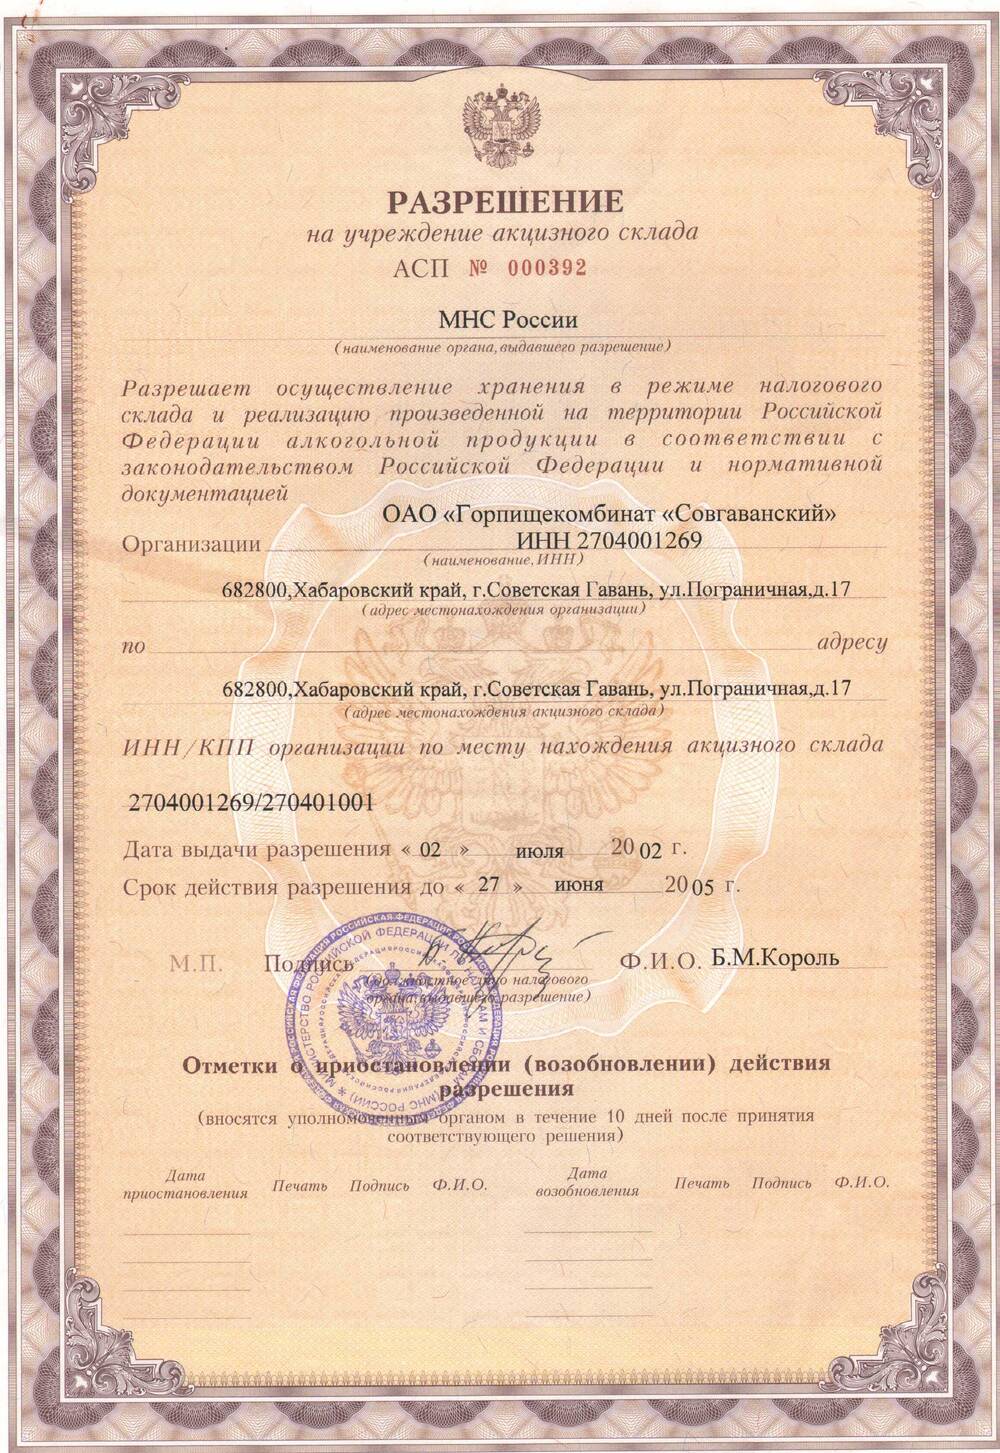 Разрешение АСП № 000392  на учреждение акцизного склада ОАО «Горпищекомбинат «Совгаванский»